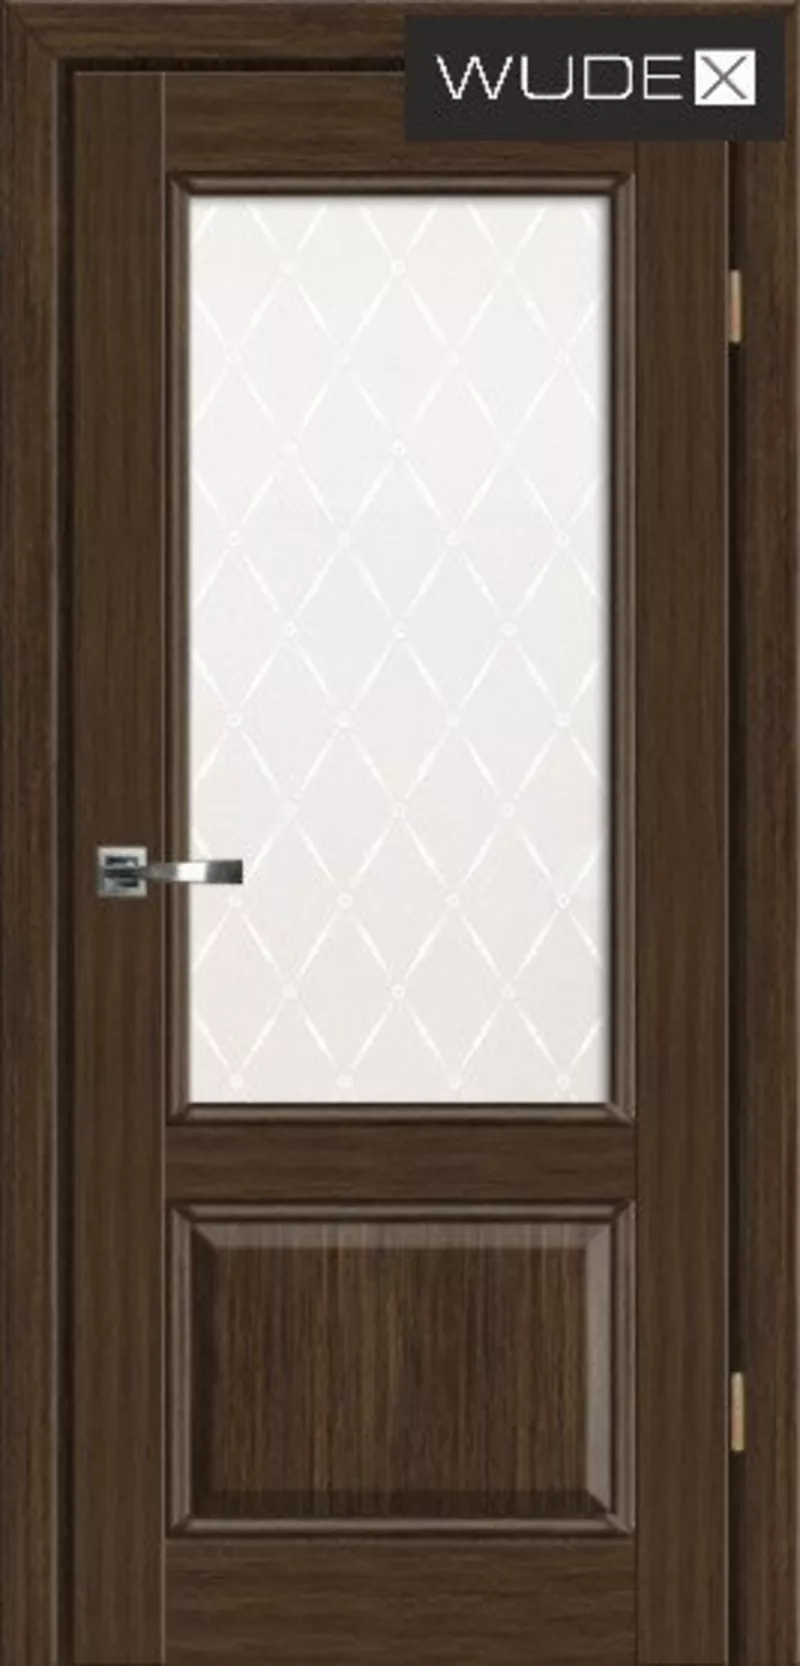 Двери межкомнатные WUDEX (ВУДЕКС двери) - шпон натуральный 5